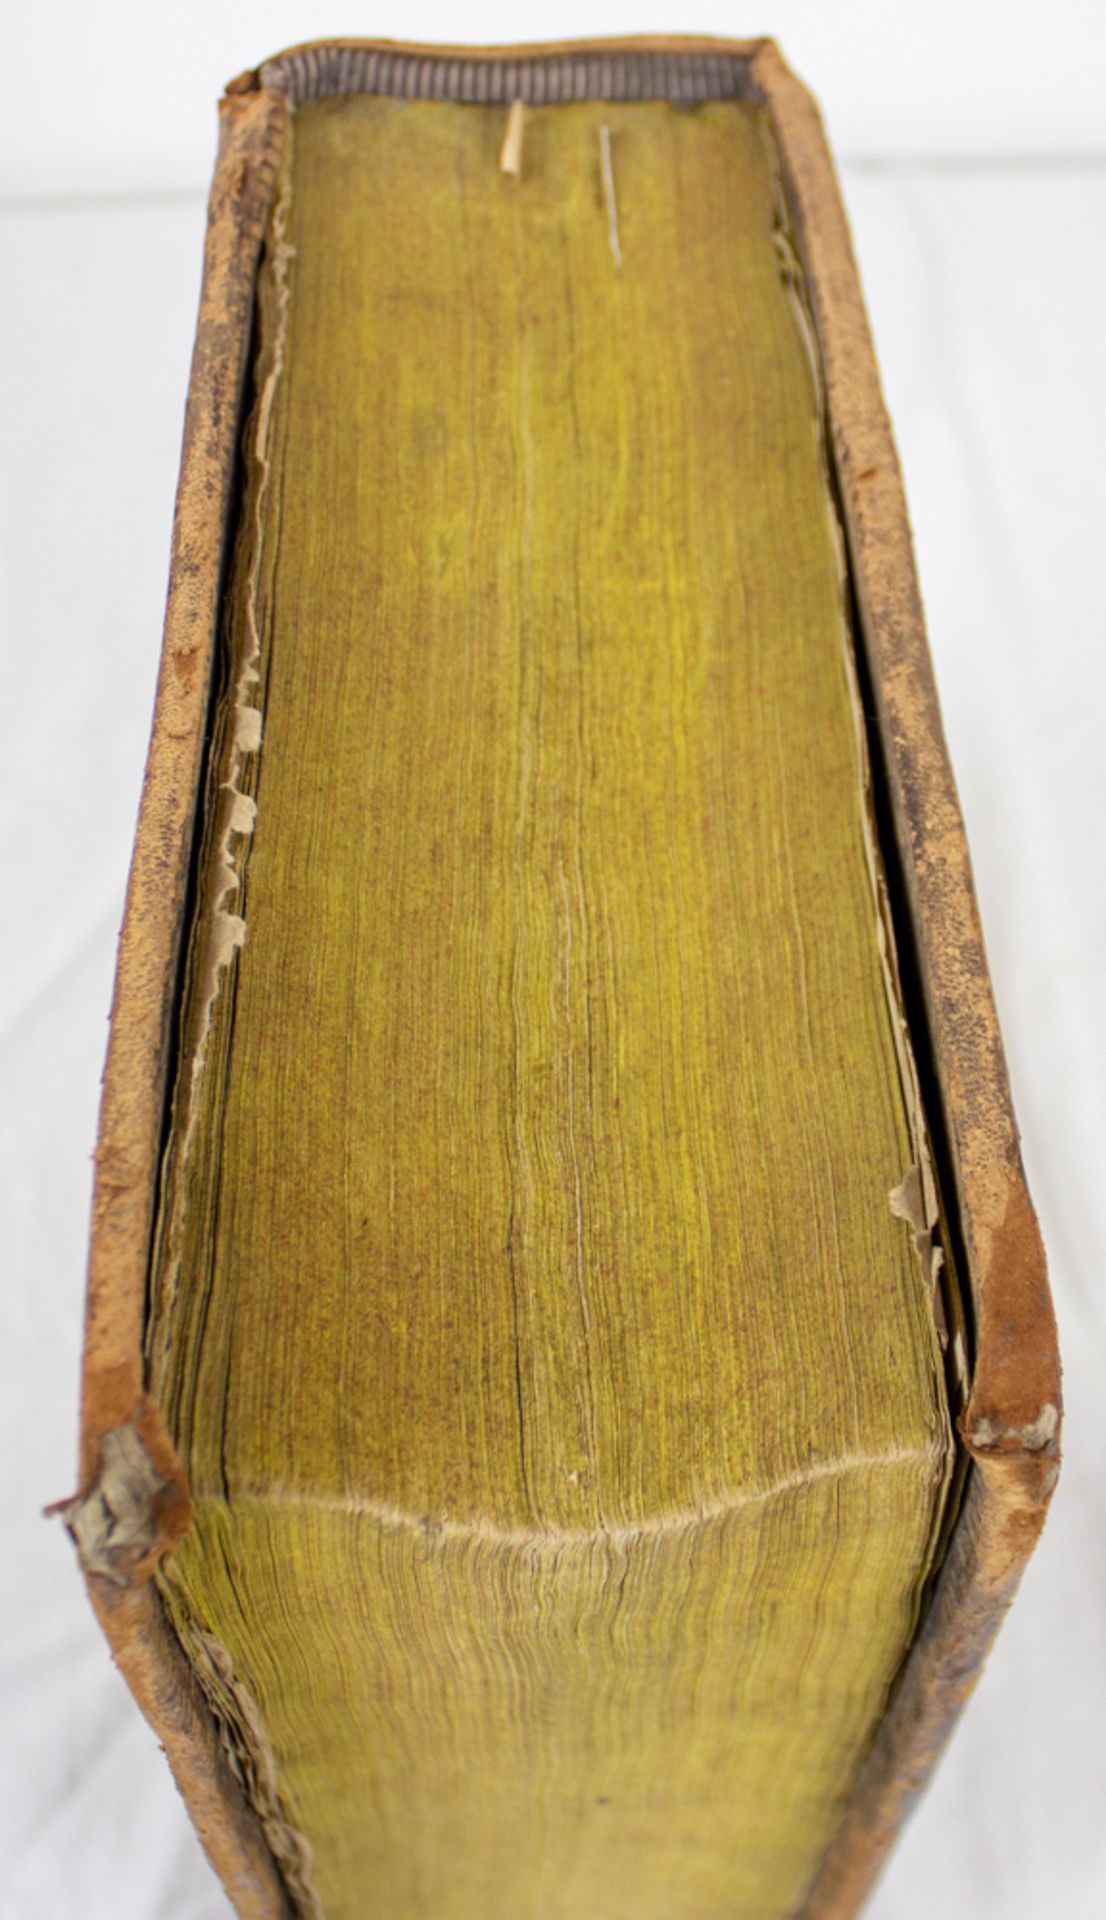 Weigand Bibel, Kolorierte Holzschnitte von Jost Amman, 16. Jh. - Bild 4 aus 20